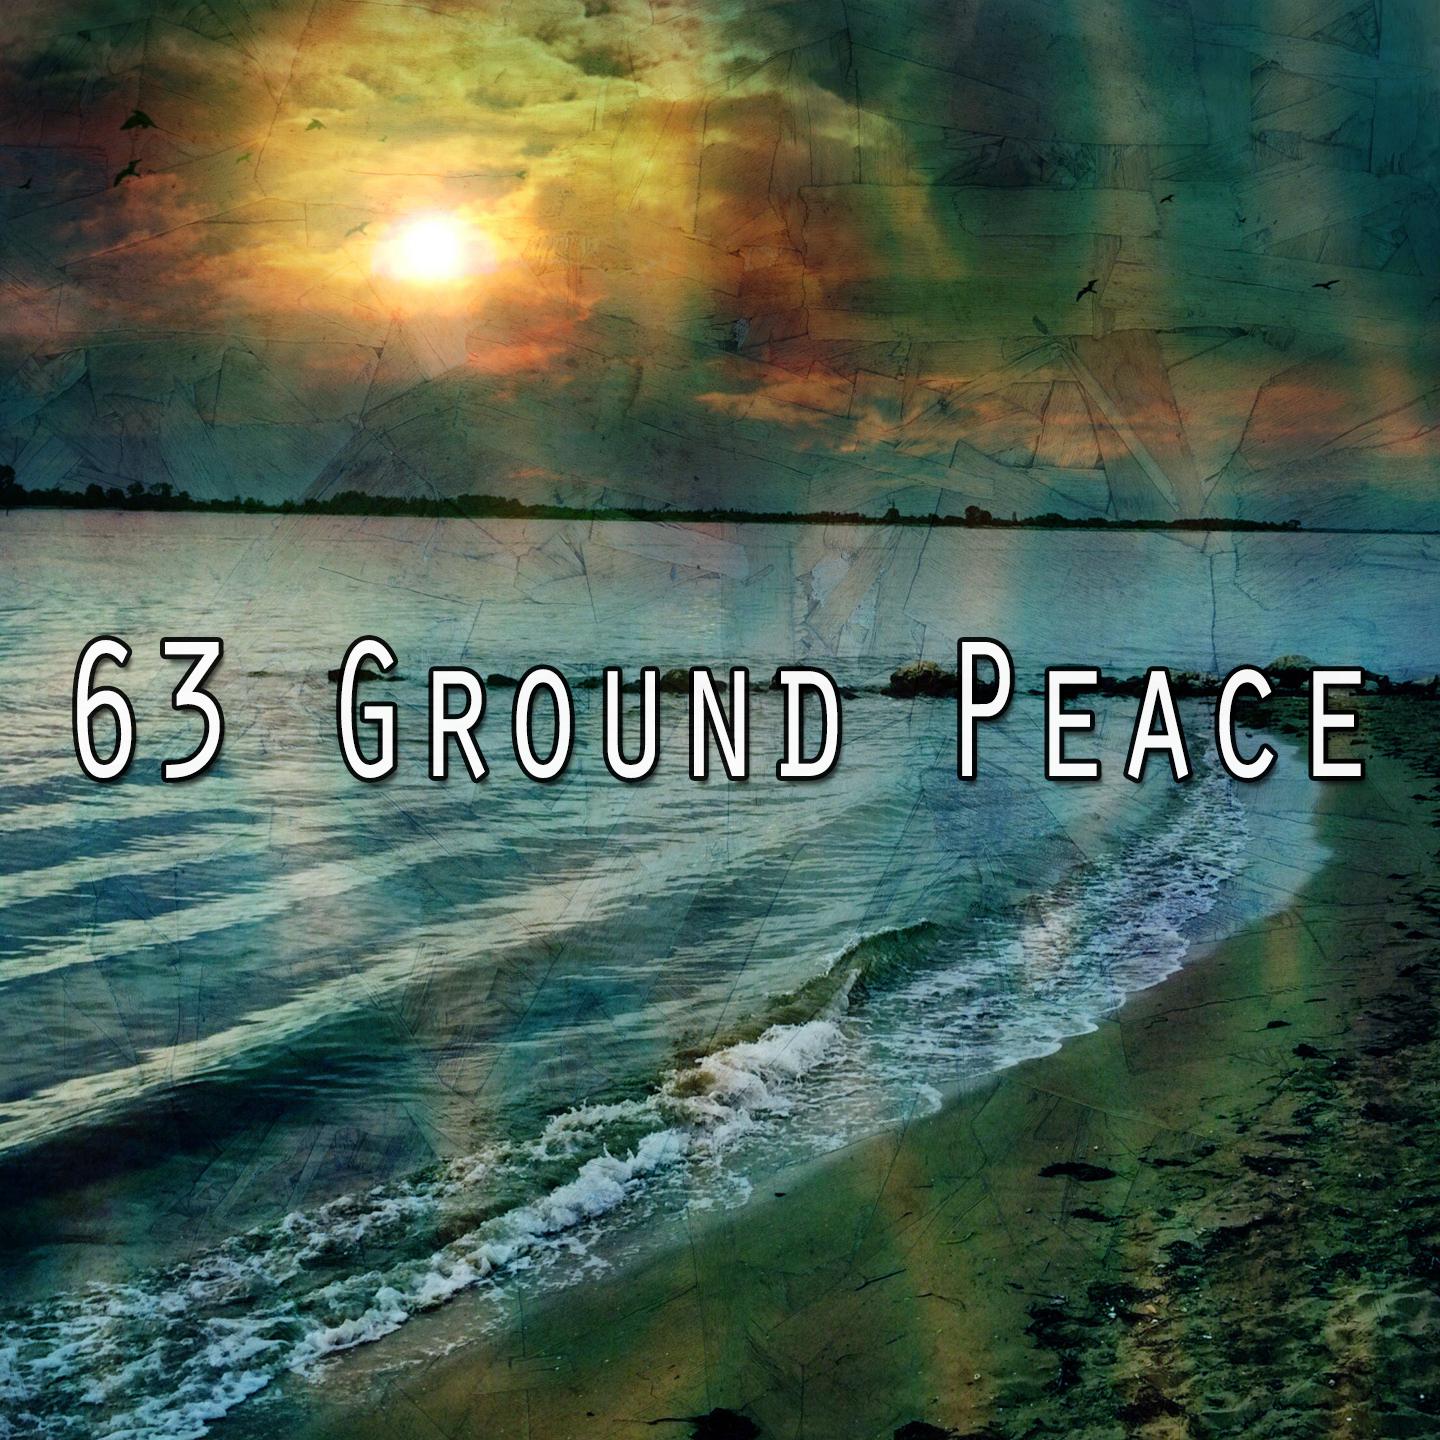 63 Ground Peace